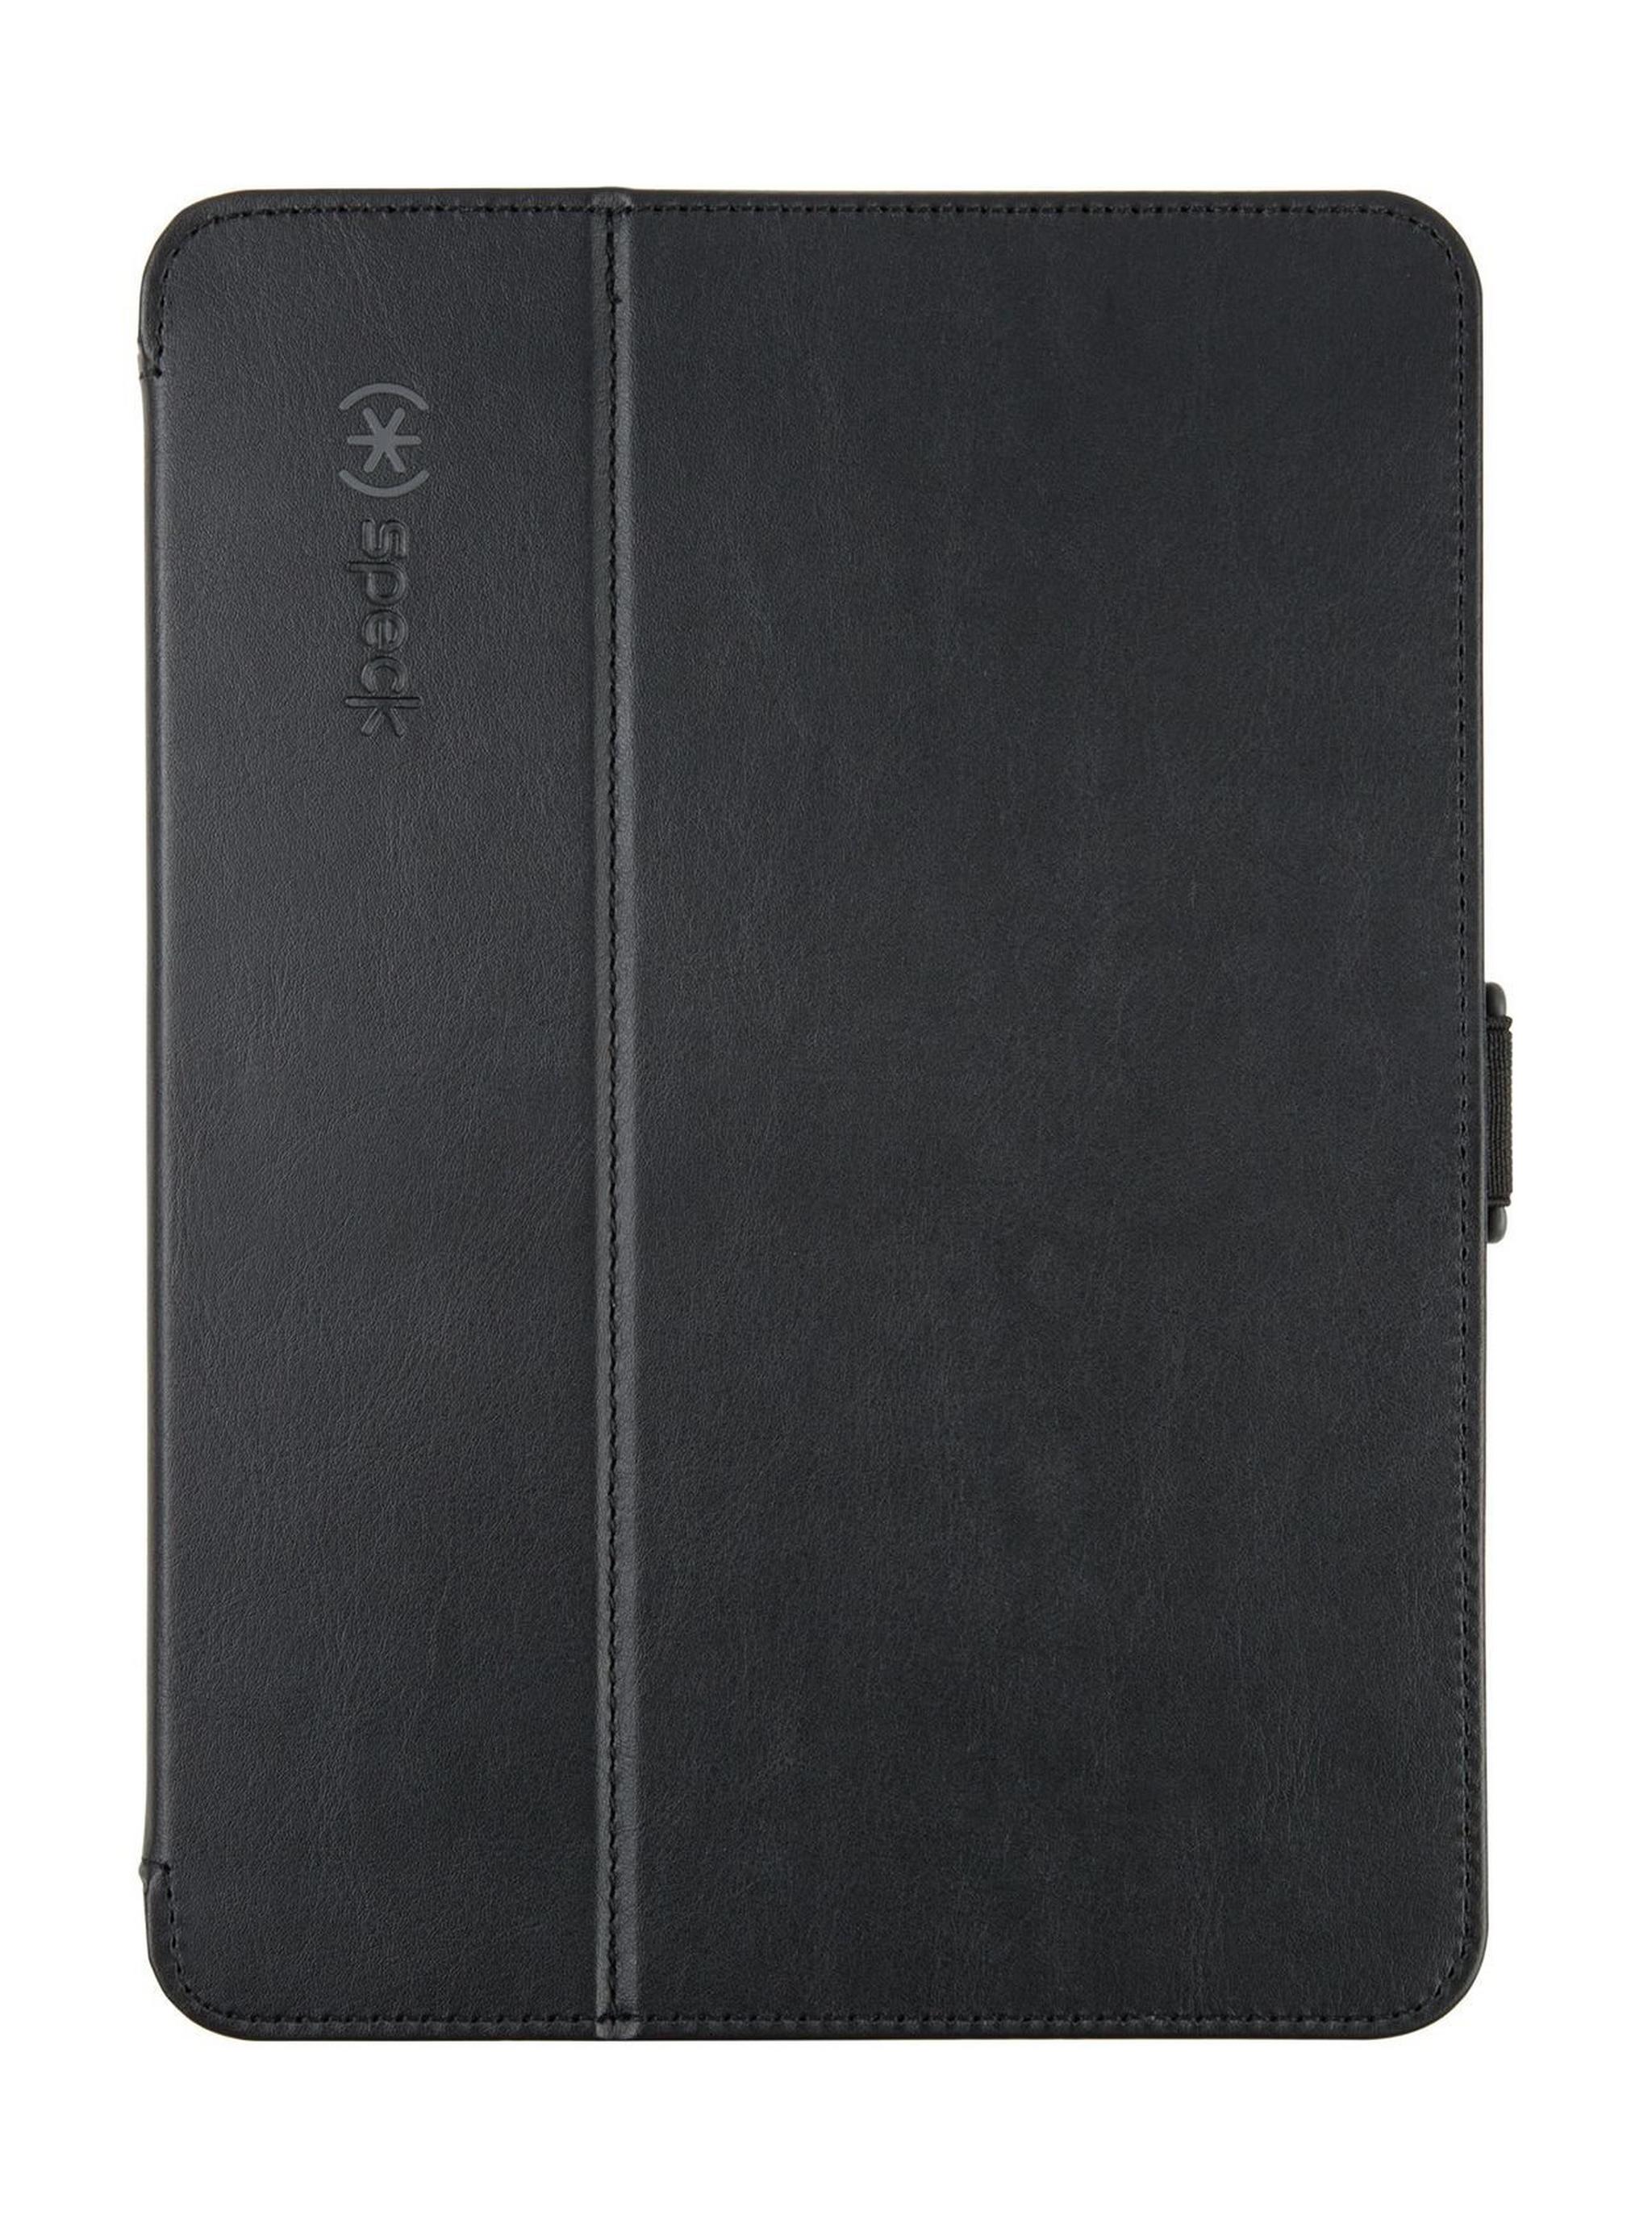 Speck Style Folio Case For Galaxy Tab A 10.1-inch – Black